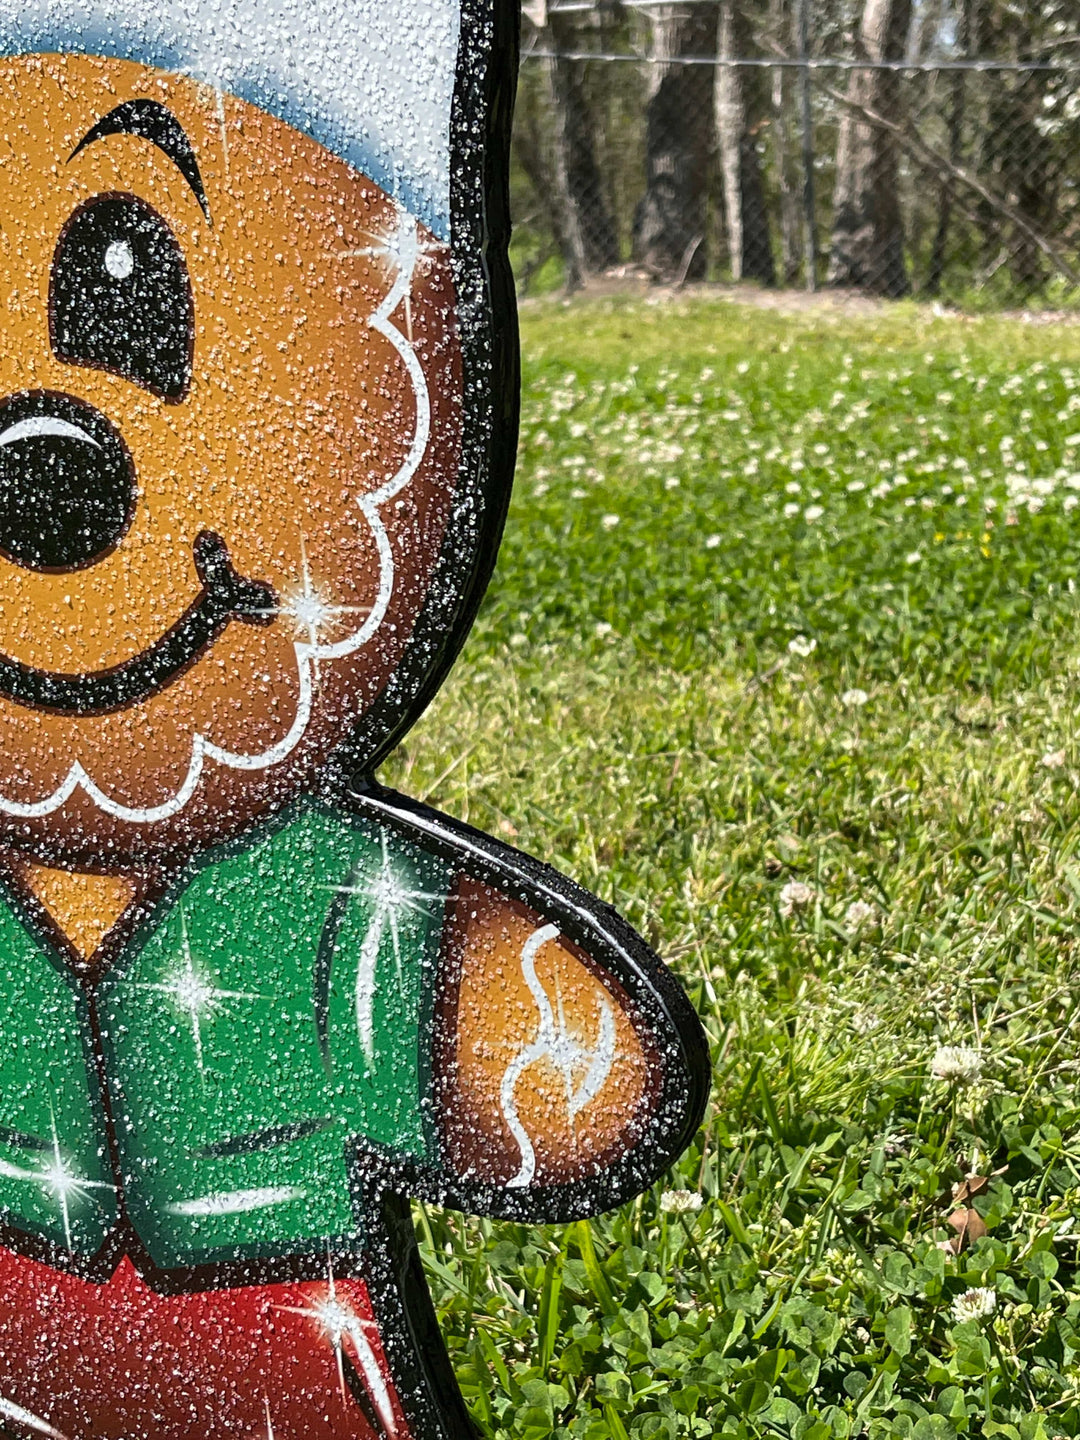 Christmas Gingerbread boy Yard Art